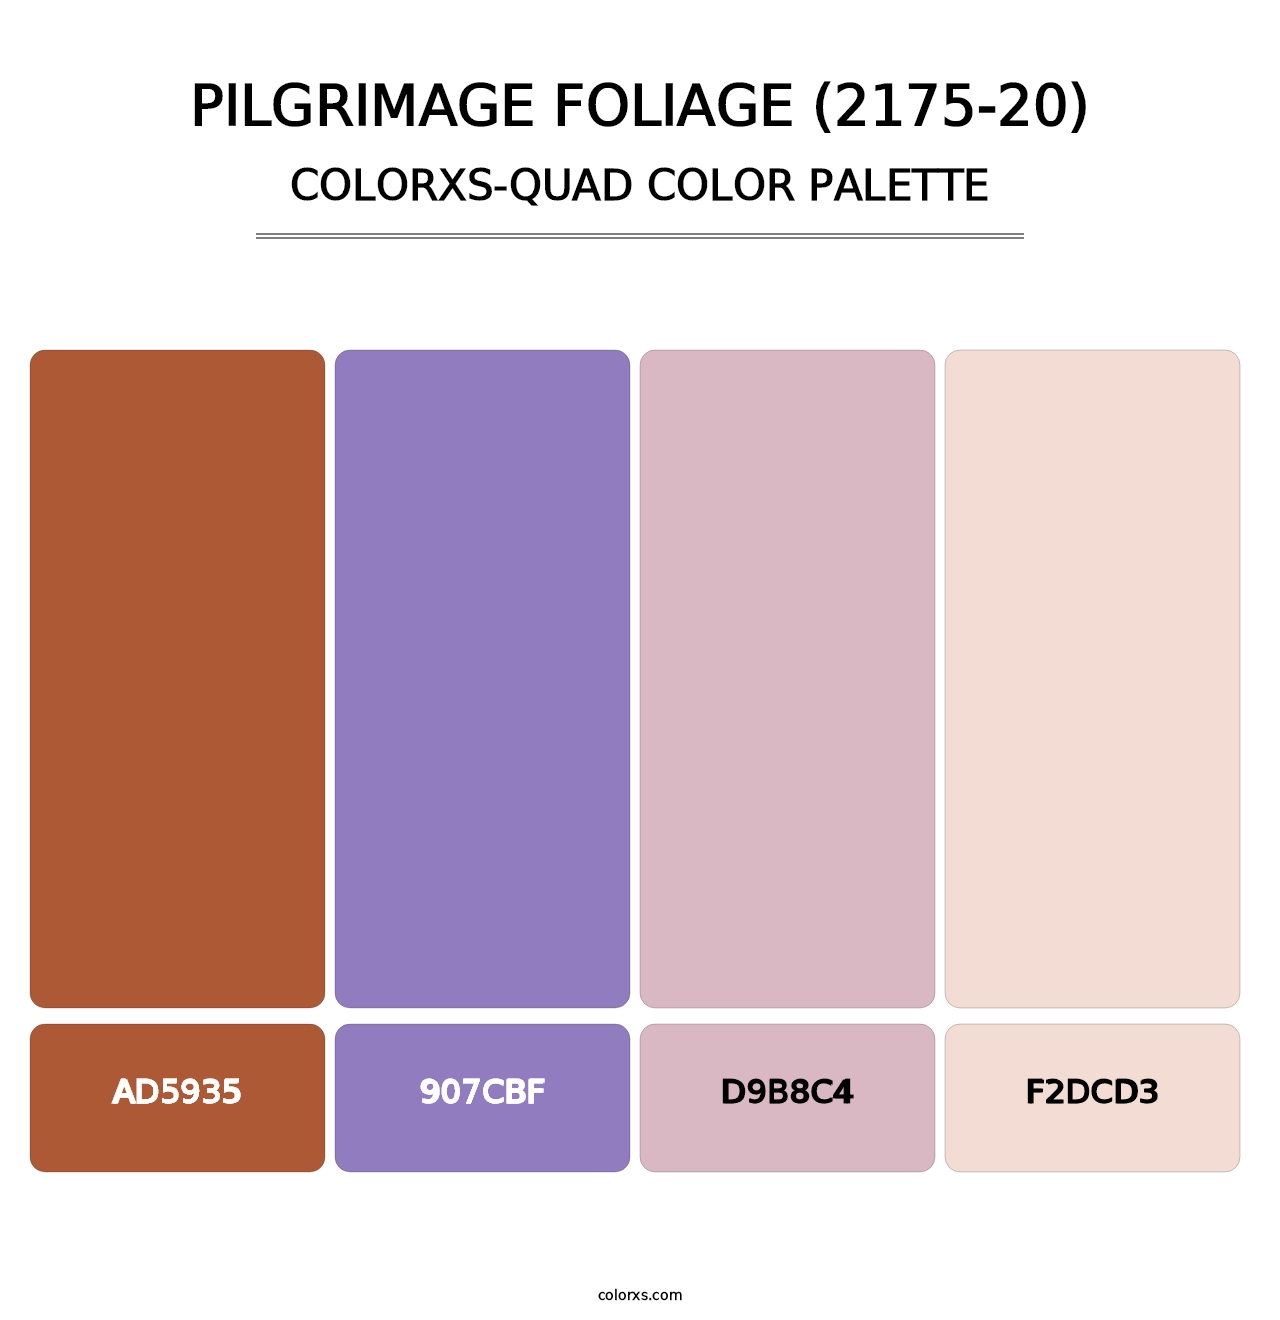 Pilgrimage Foliage (2175-20) - Colorxs Quad Palette